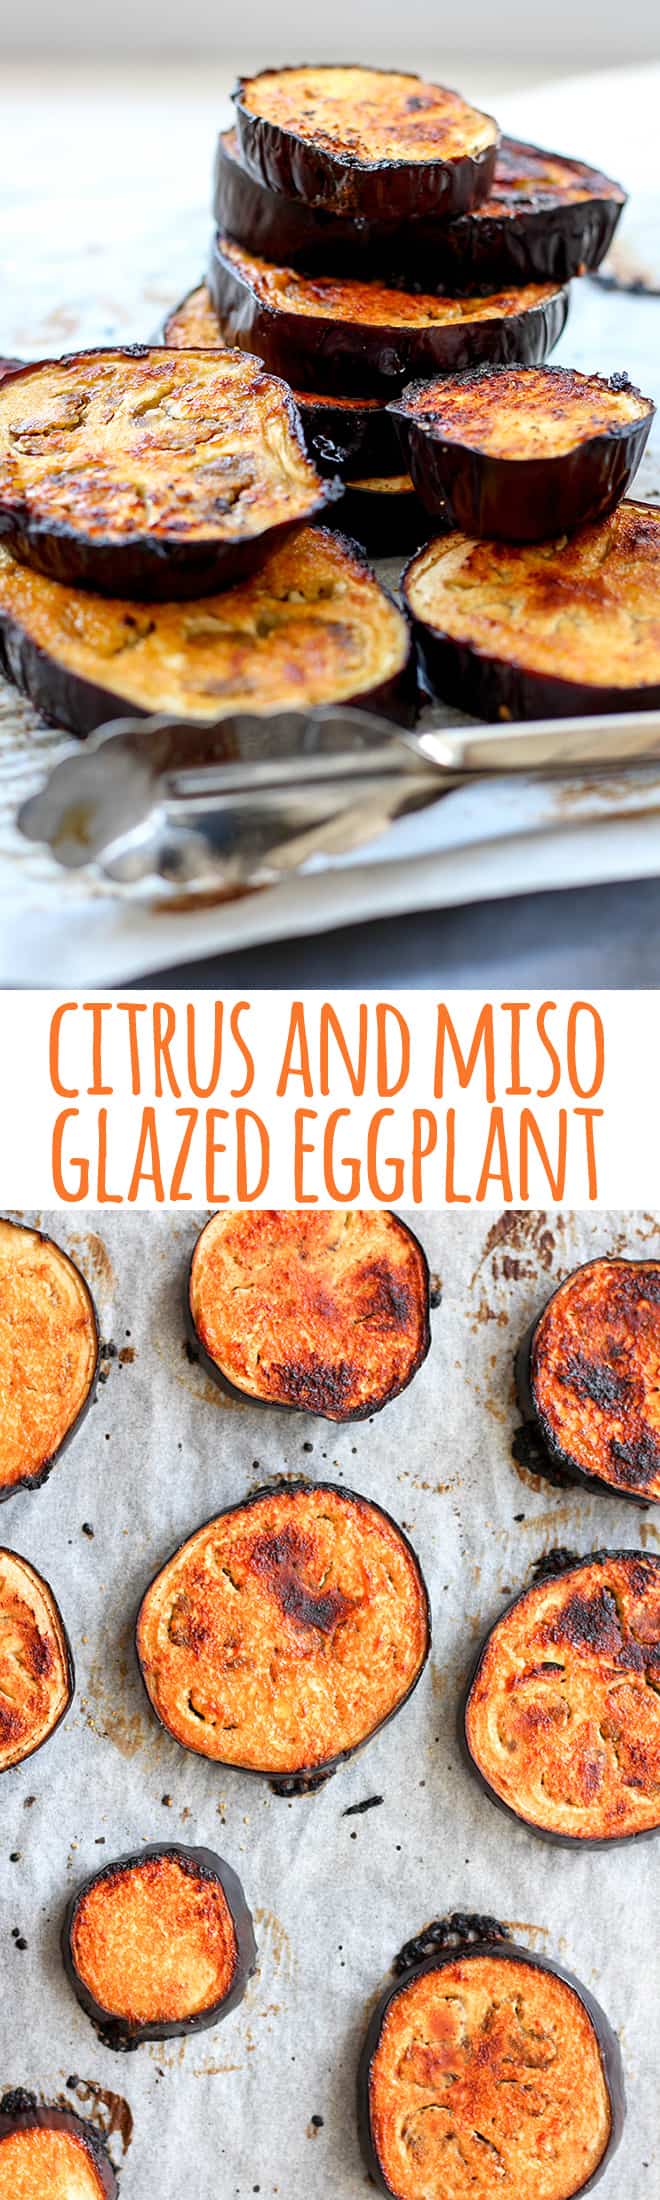 Citrus and miso glazed eggplant. 